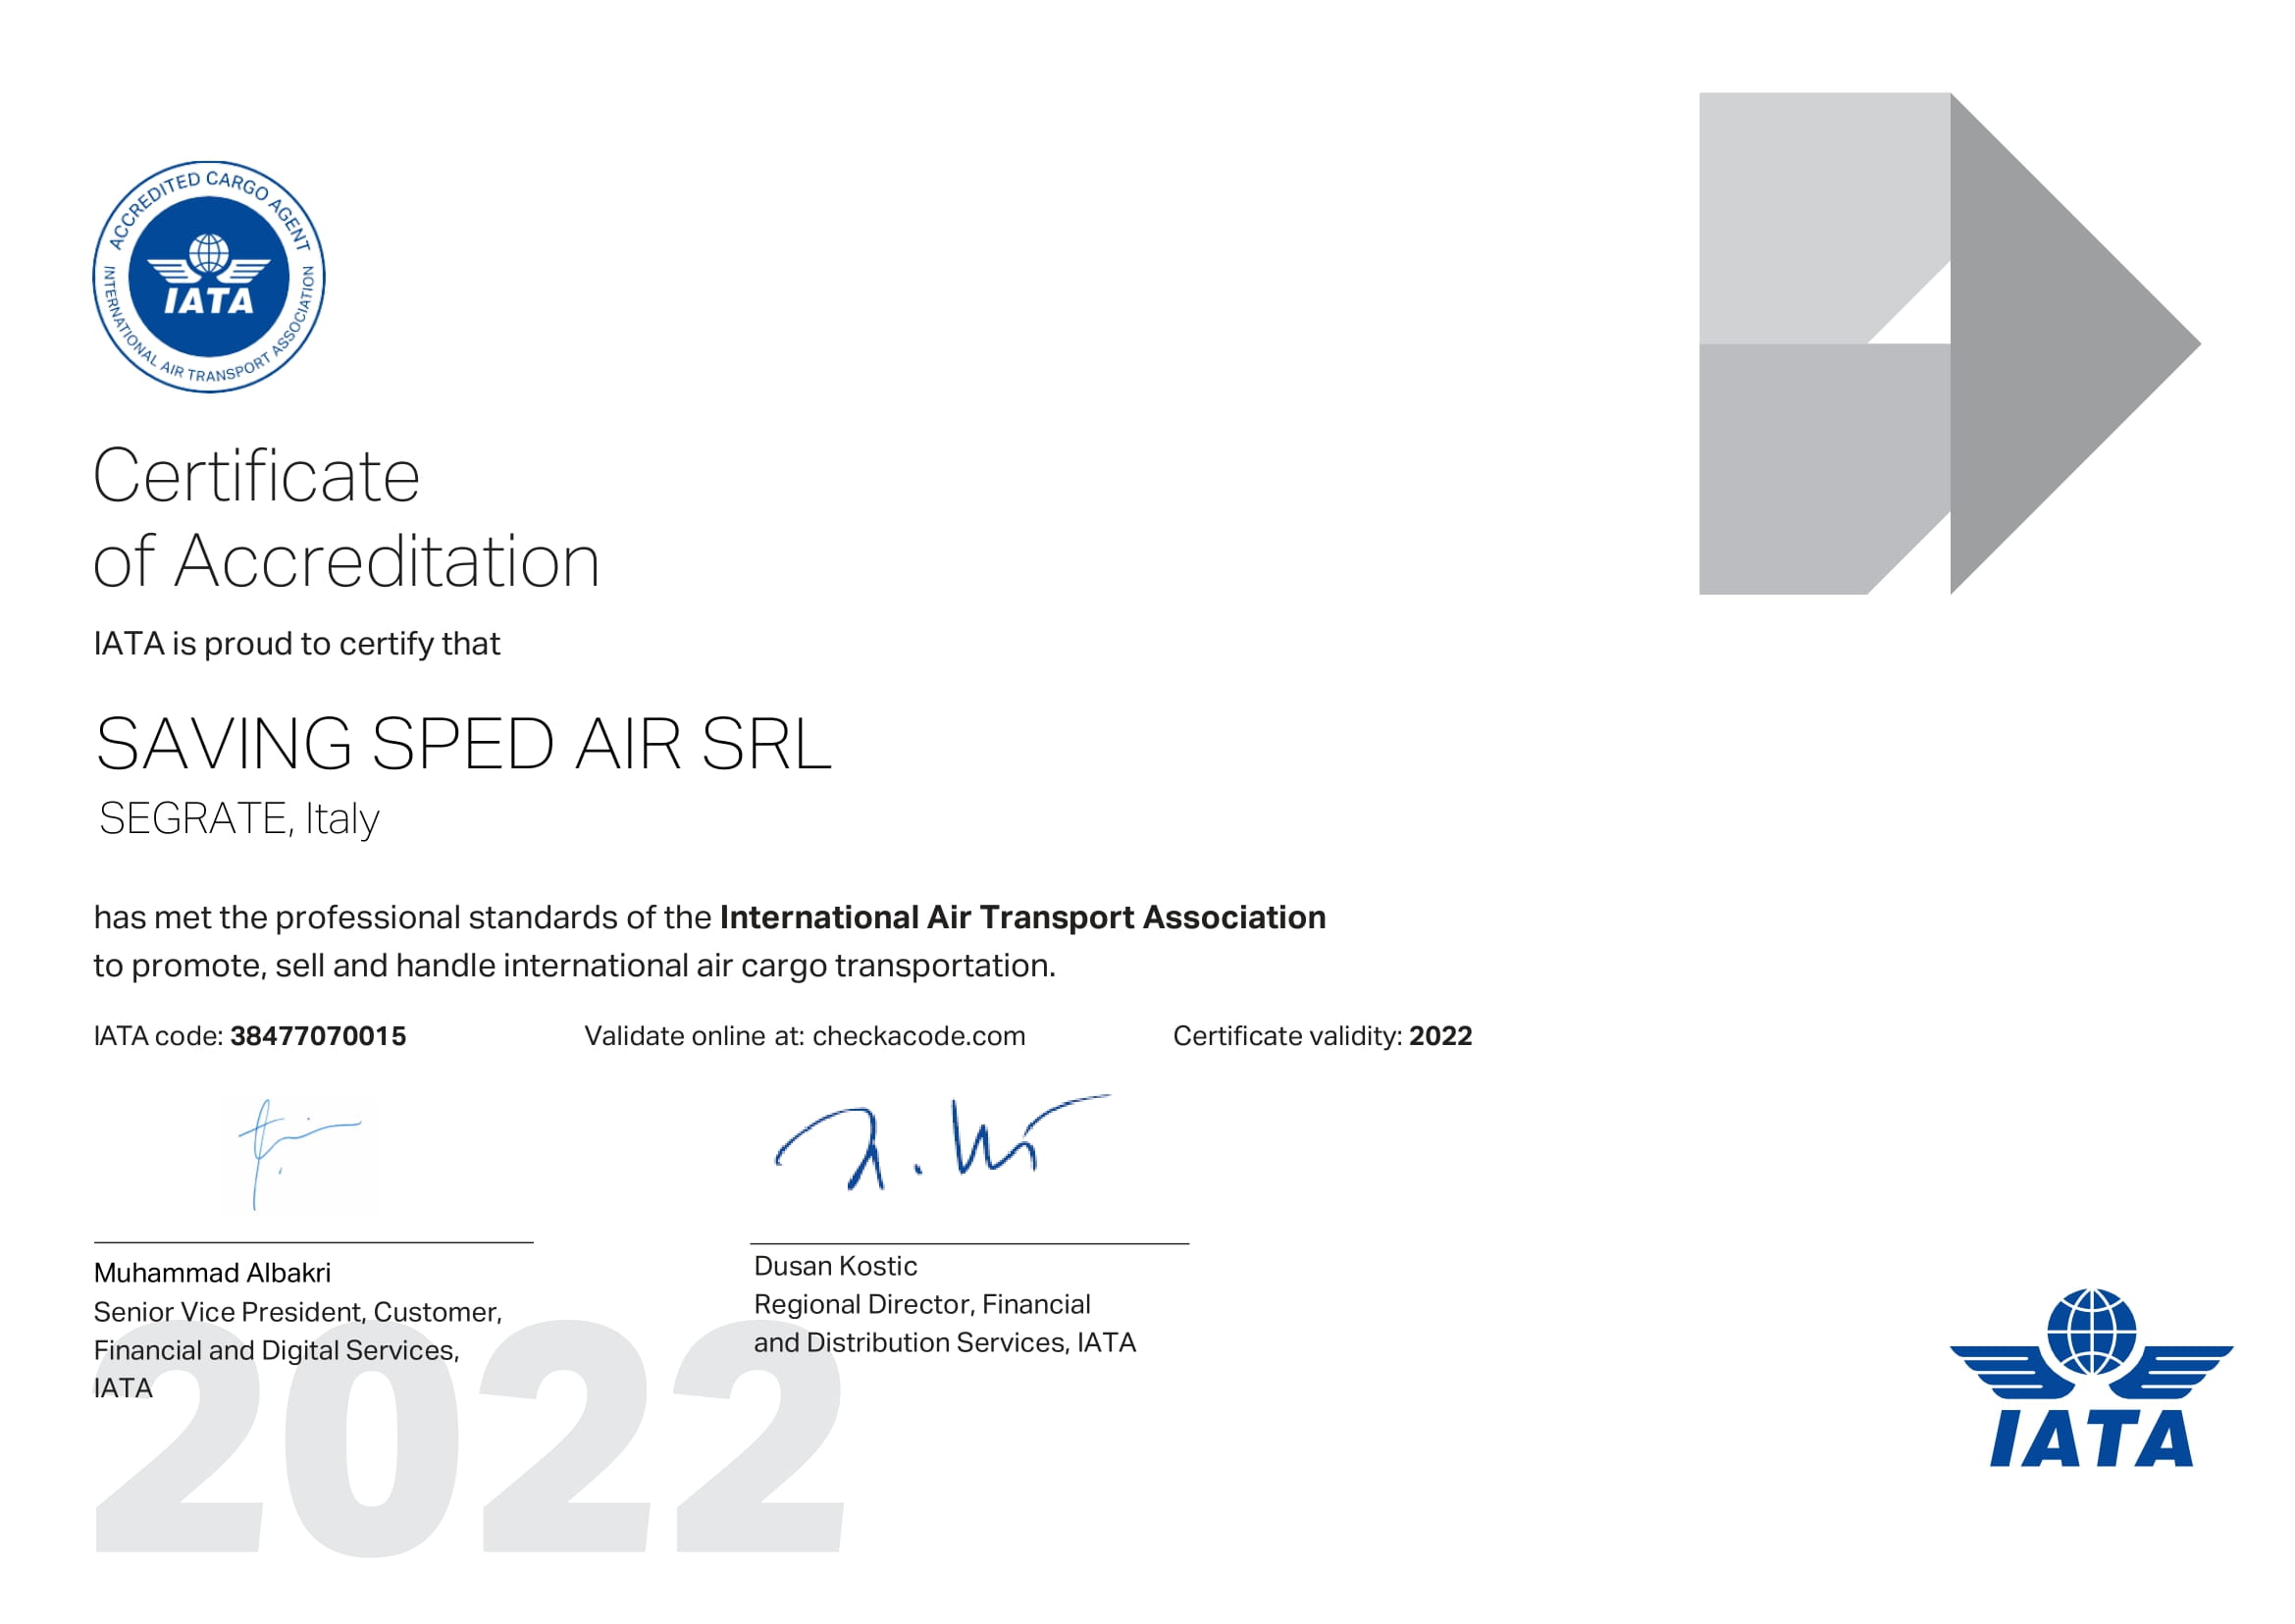 http://www.savingroup.com/images/uploads/qualita/2022-SSA-IATA-Certificate.jpg